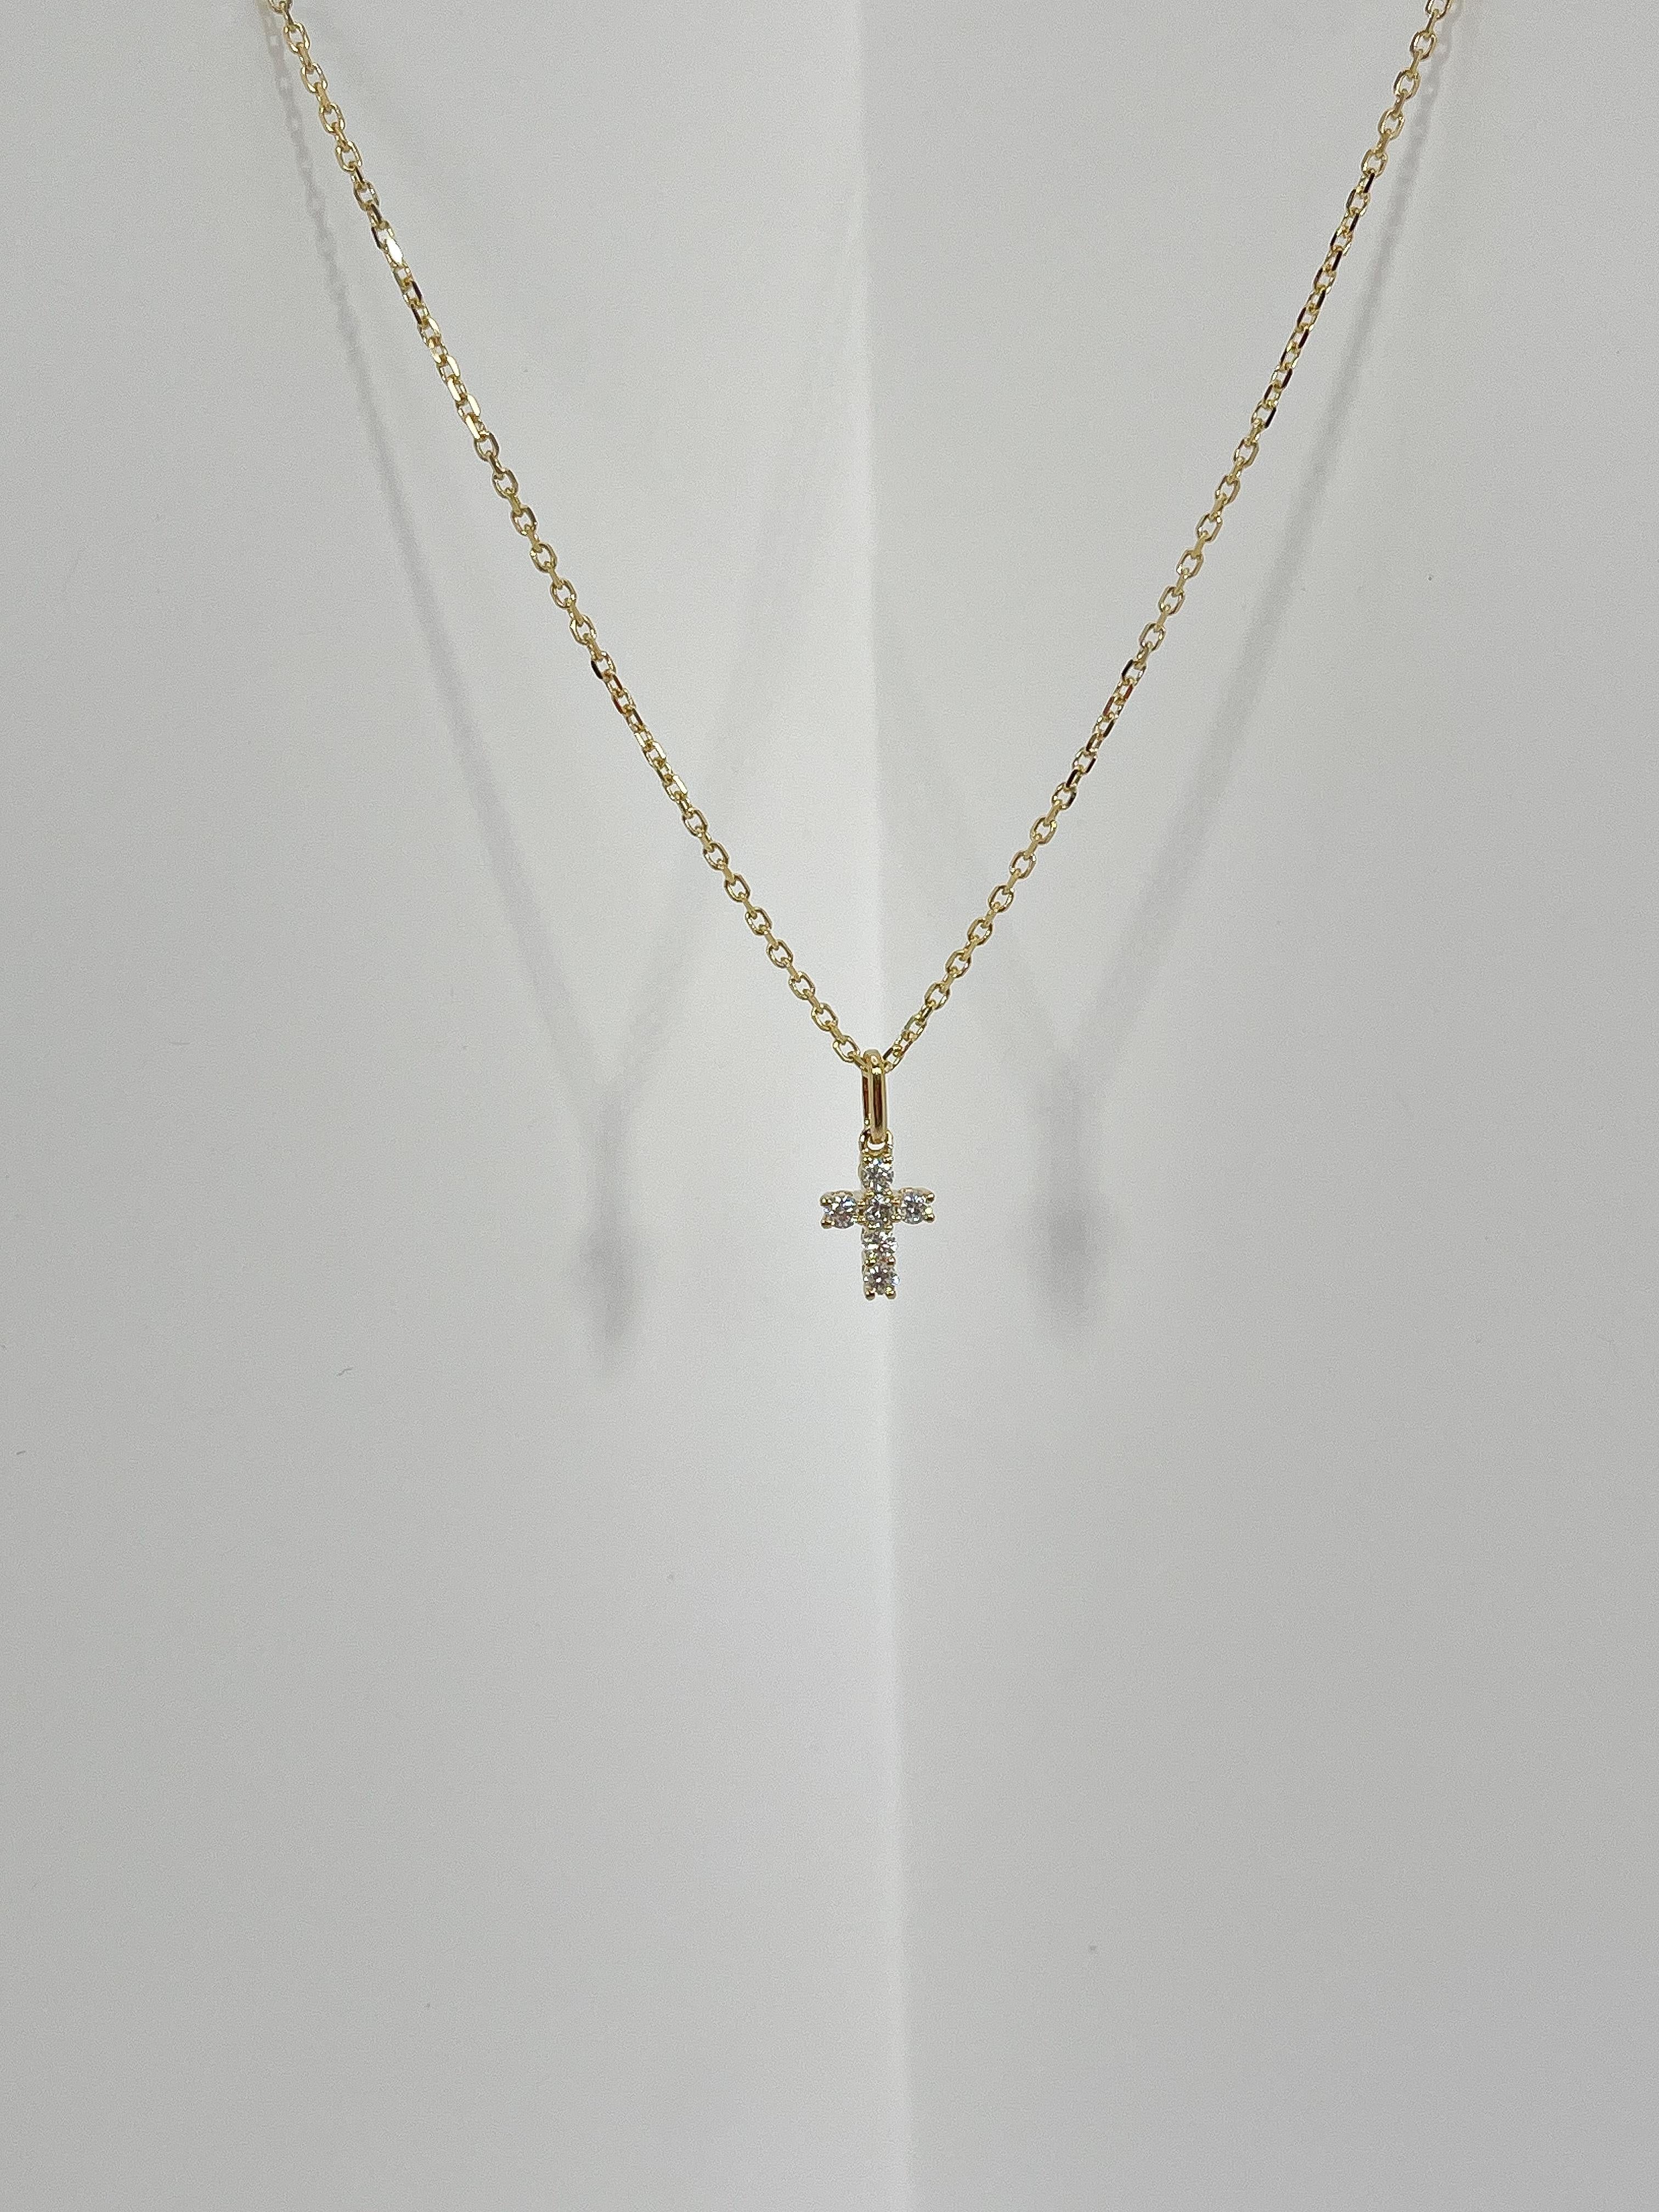 Collier en or jaune 18k avec pendentif en forme de croix et diamant de 0,20 CTW. Les diamants du pendentif sont de forme ronde, le pendentif mesure 8,7 mm x 6,5 mm, il est muni d'un fermoir à mousqueton qui permet de l'ouvrir et de le fermer, le